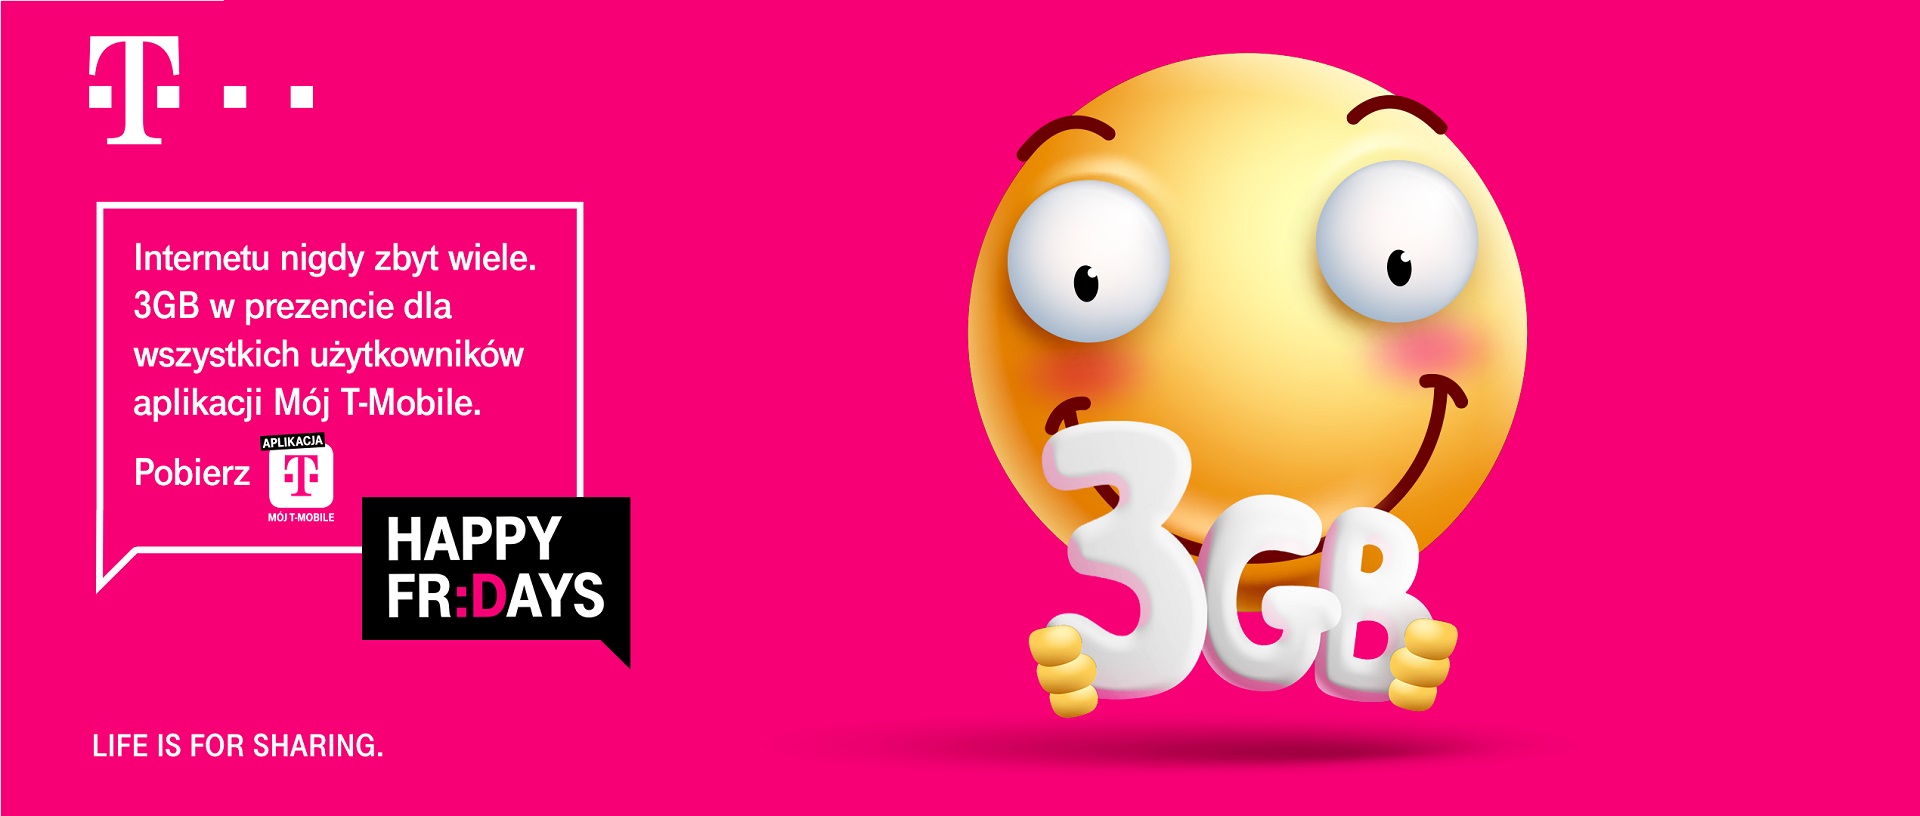 T-Mobile pakiet 3 GB internetu za darmo Happy Fridays